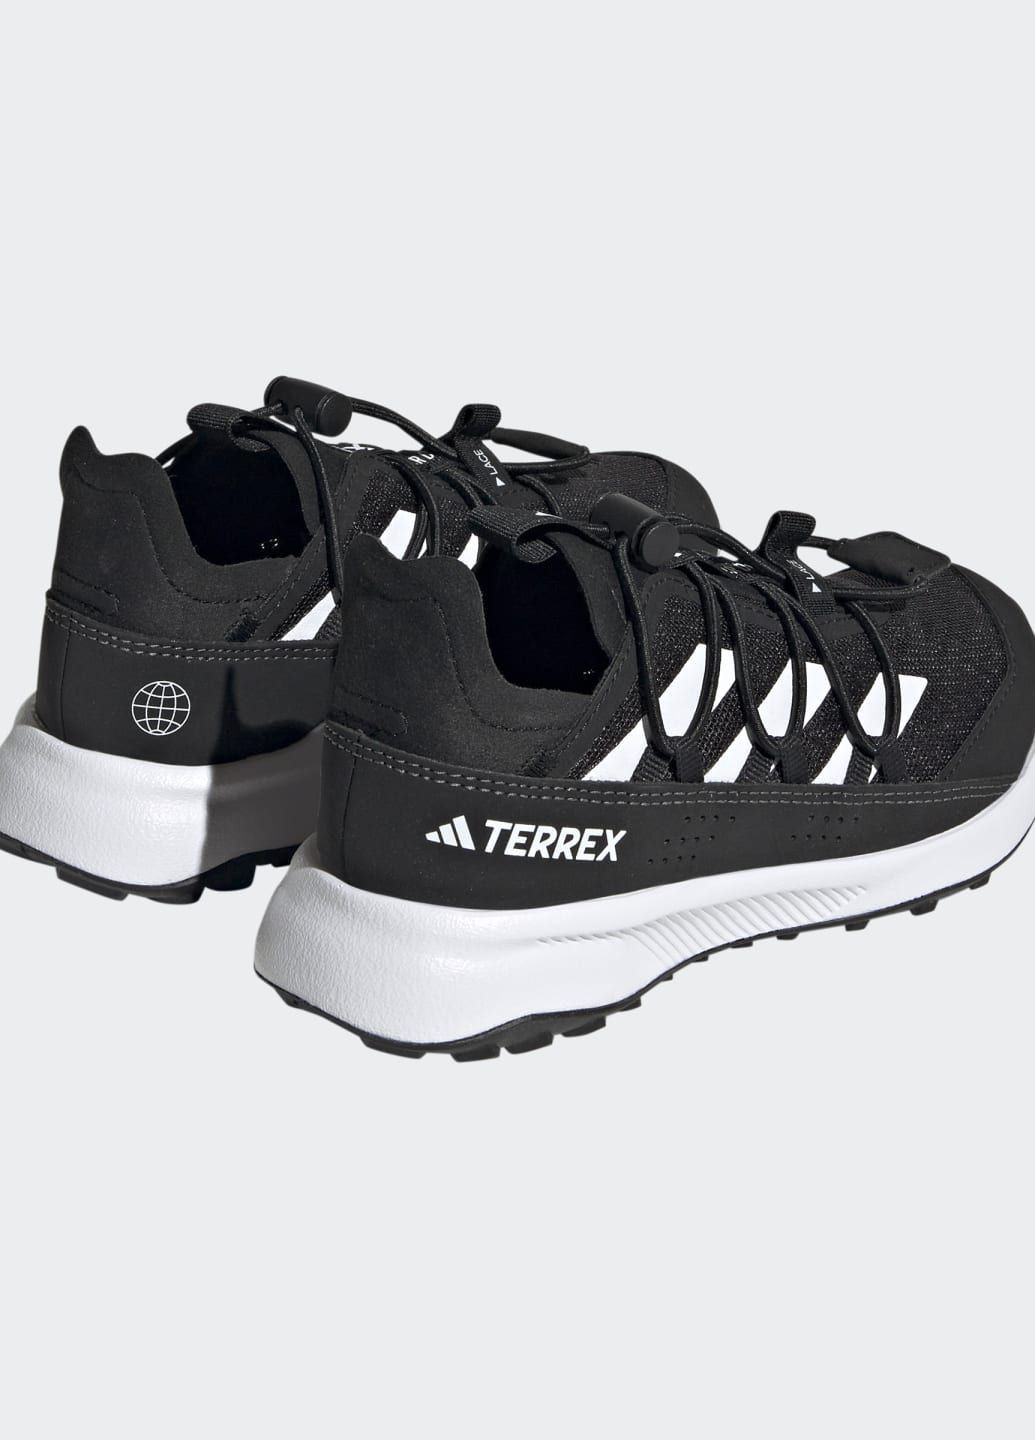 Черные всесезонные туристические кроссовки terrex voyager 21 heat.rdy adidas